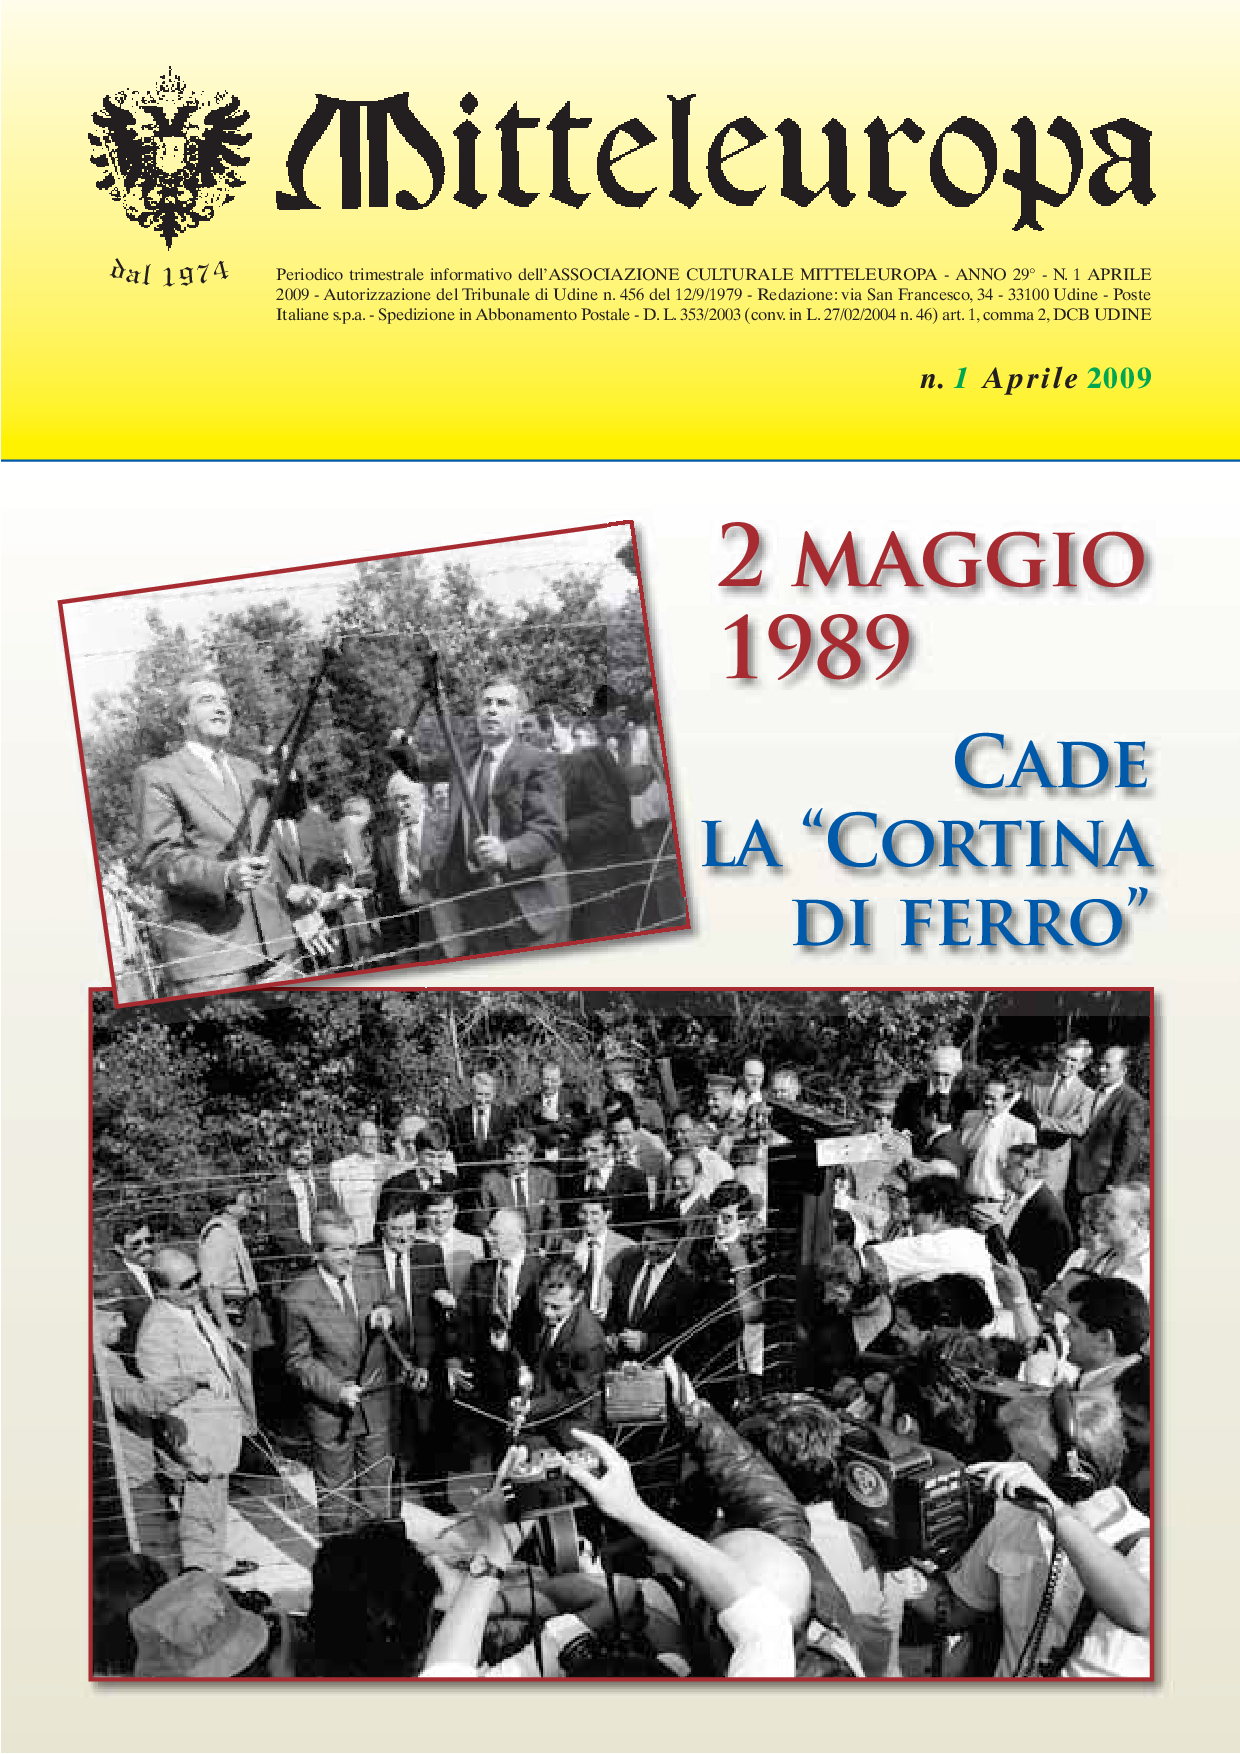 2 MAGGIO 1989. CADE LA "CORTINA DI FERRO"